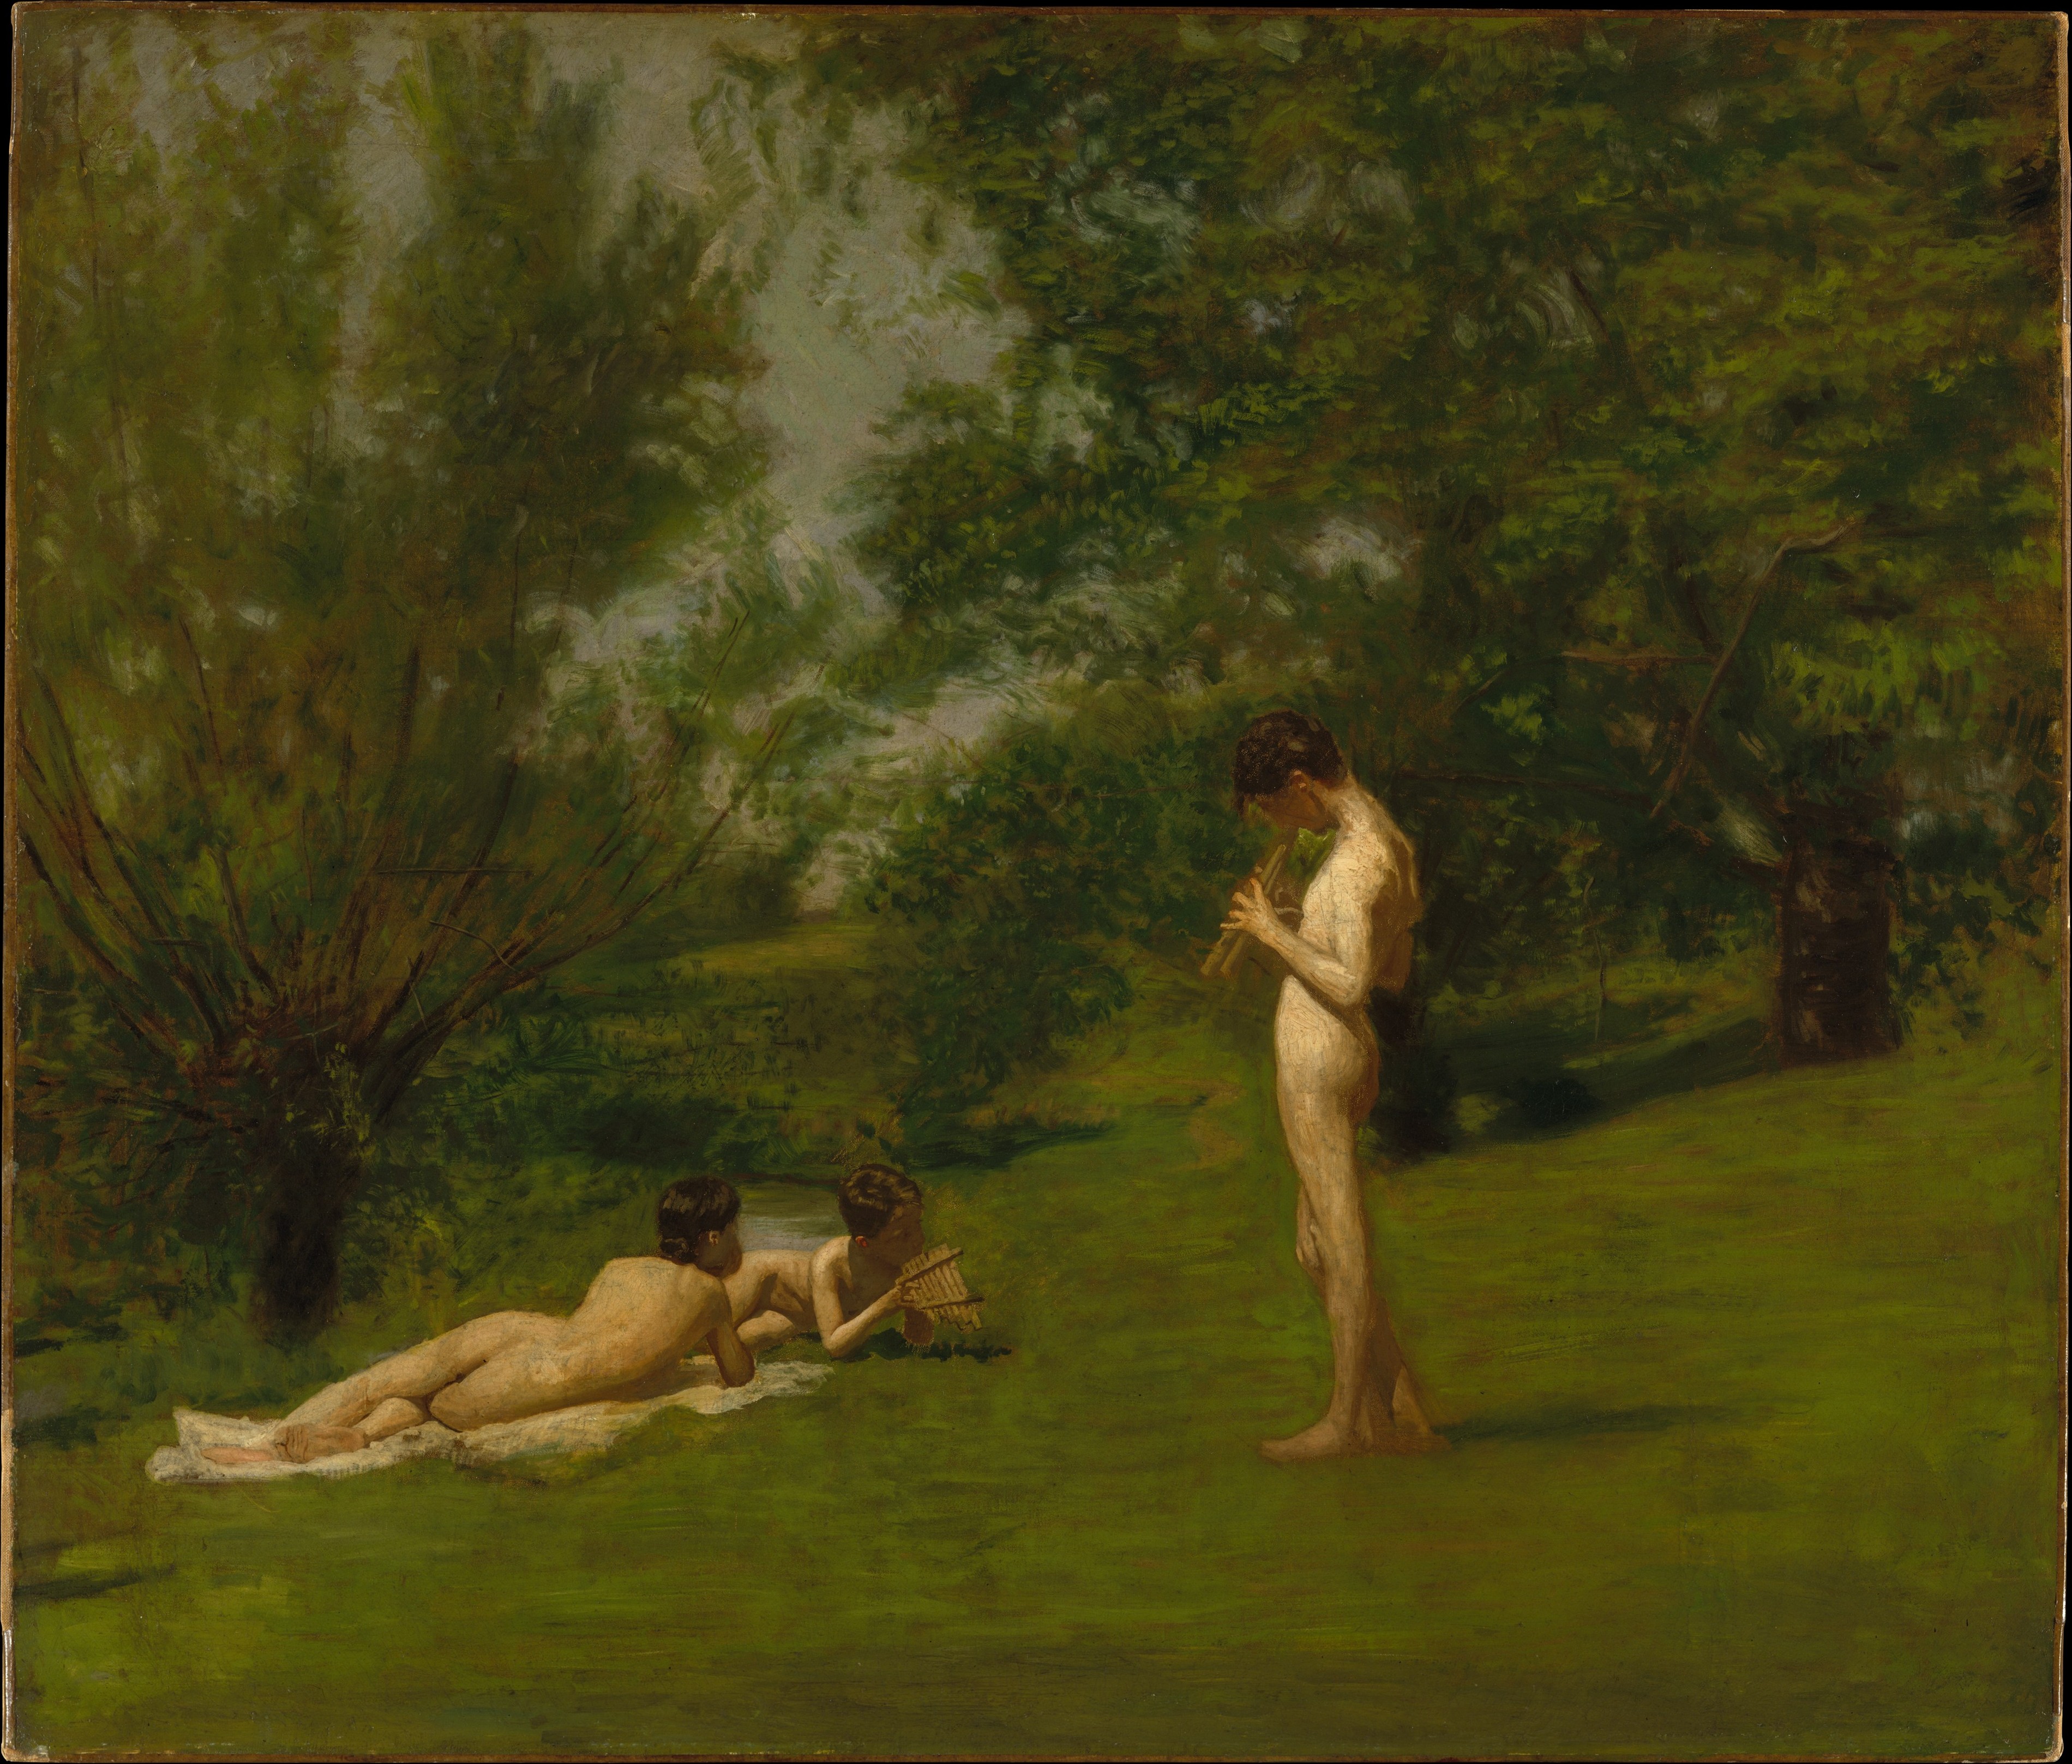 Arcadia by Thomas Eakins - c. 1883 - 98.1 x 114.3 cm Museo Metropolitano de Arte